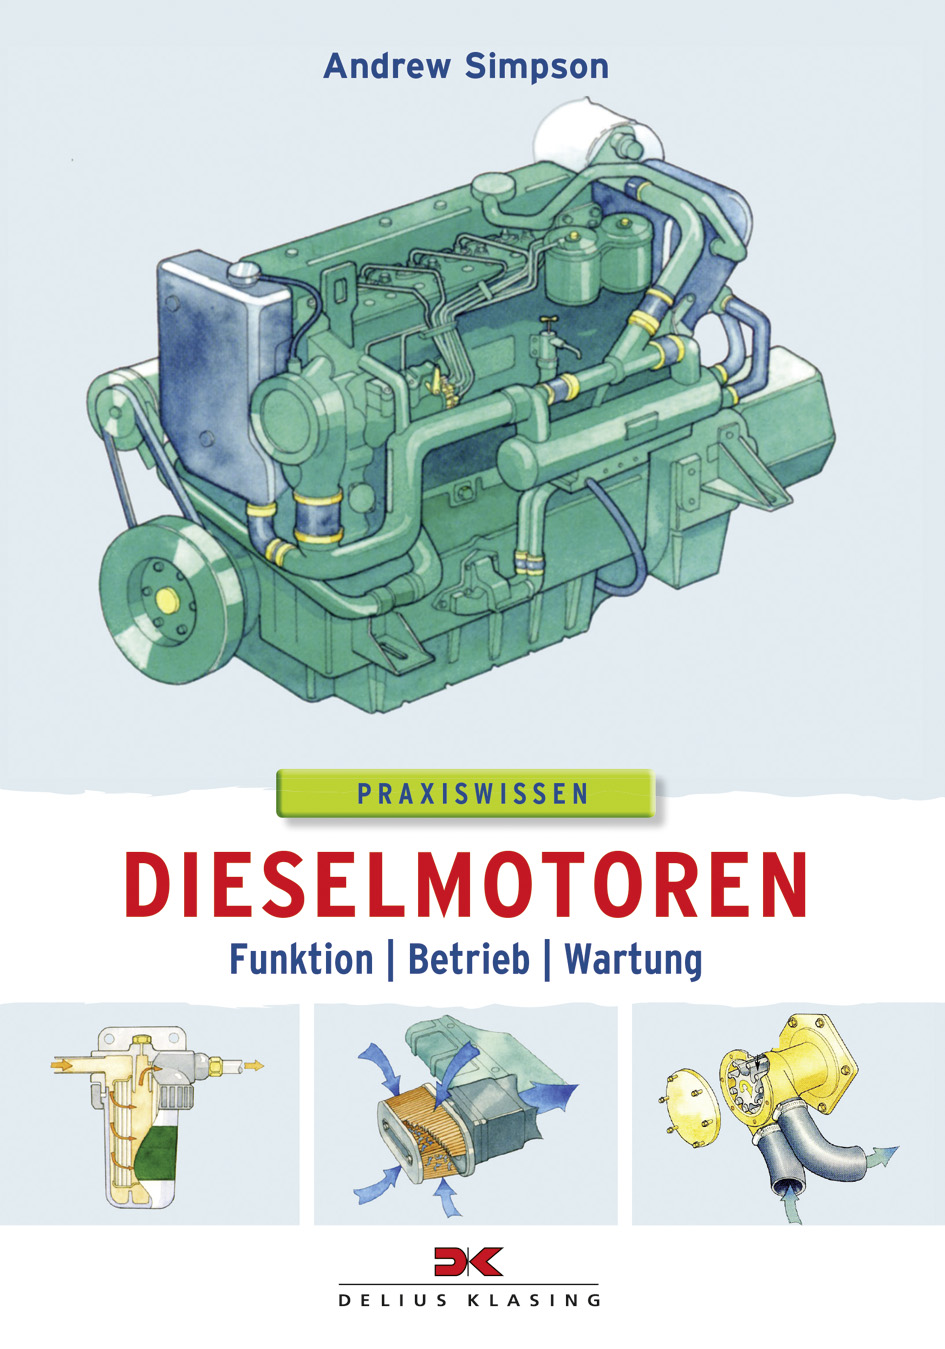 Dieselmotoren Funktion - Betrieb - Wartung